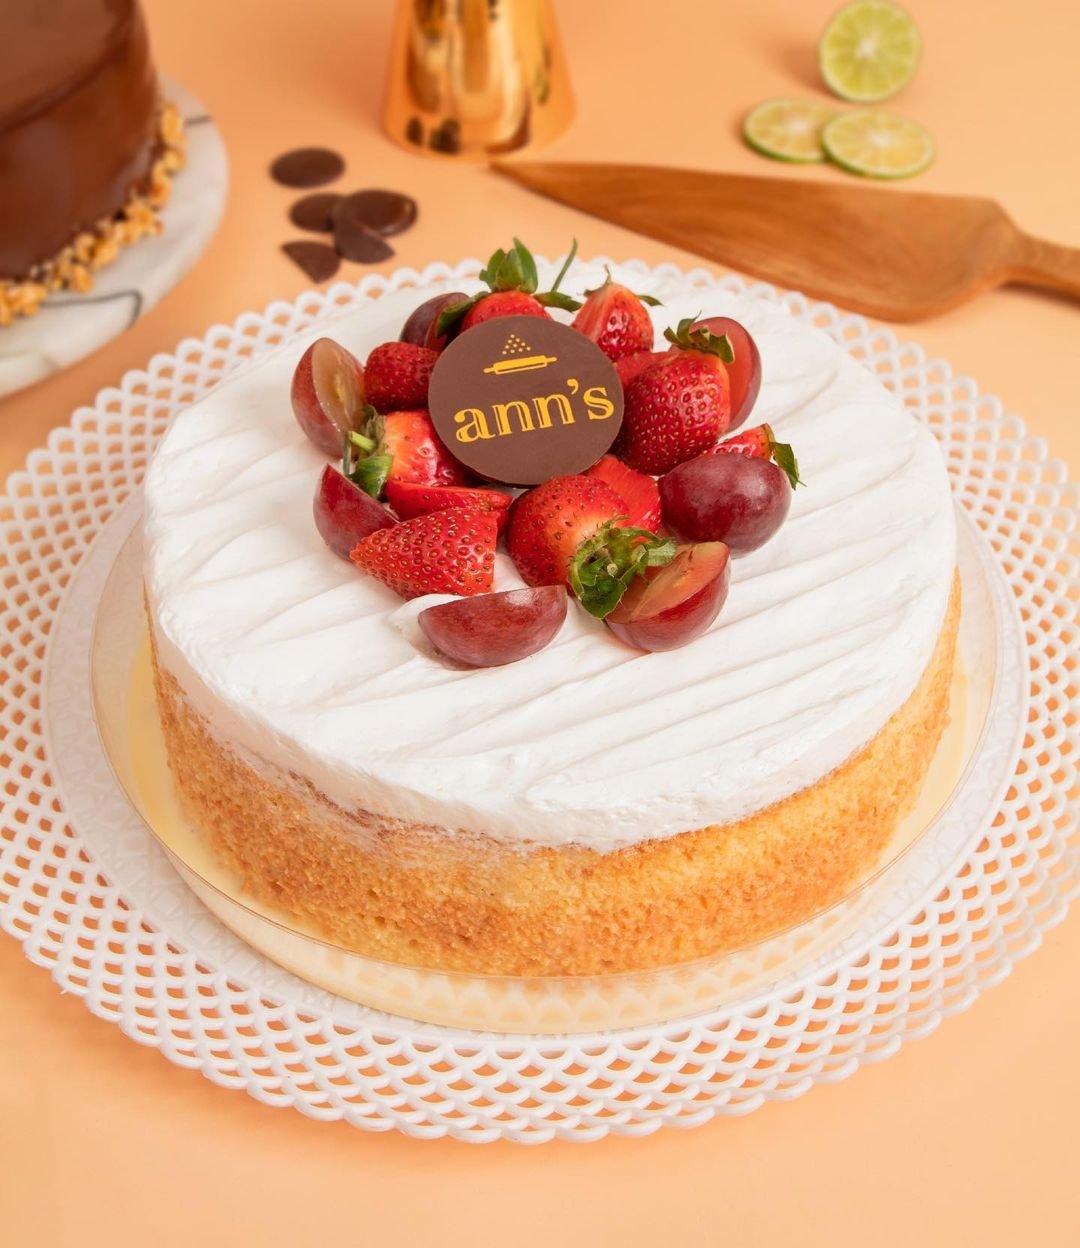 Buy Woman Chef Birthday Cake at Best Price | YummyCake